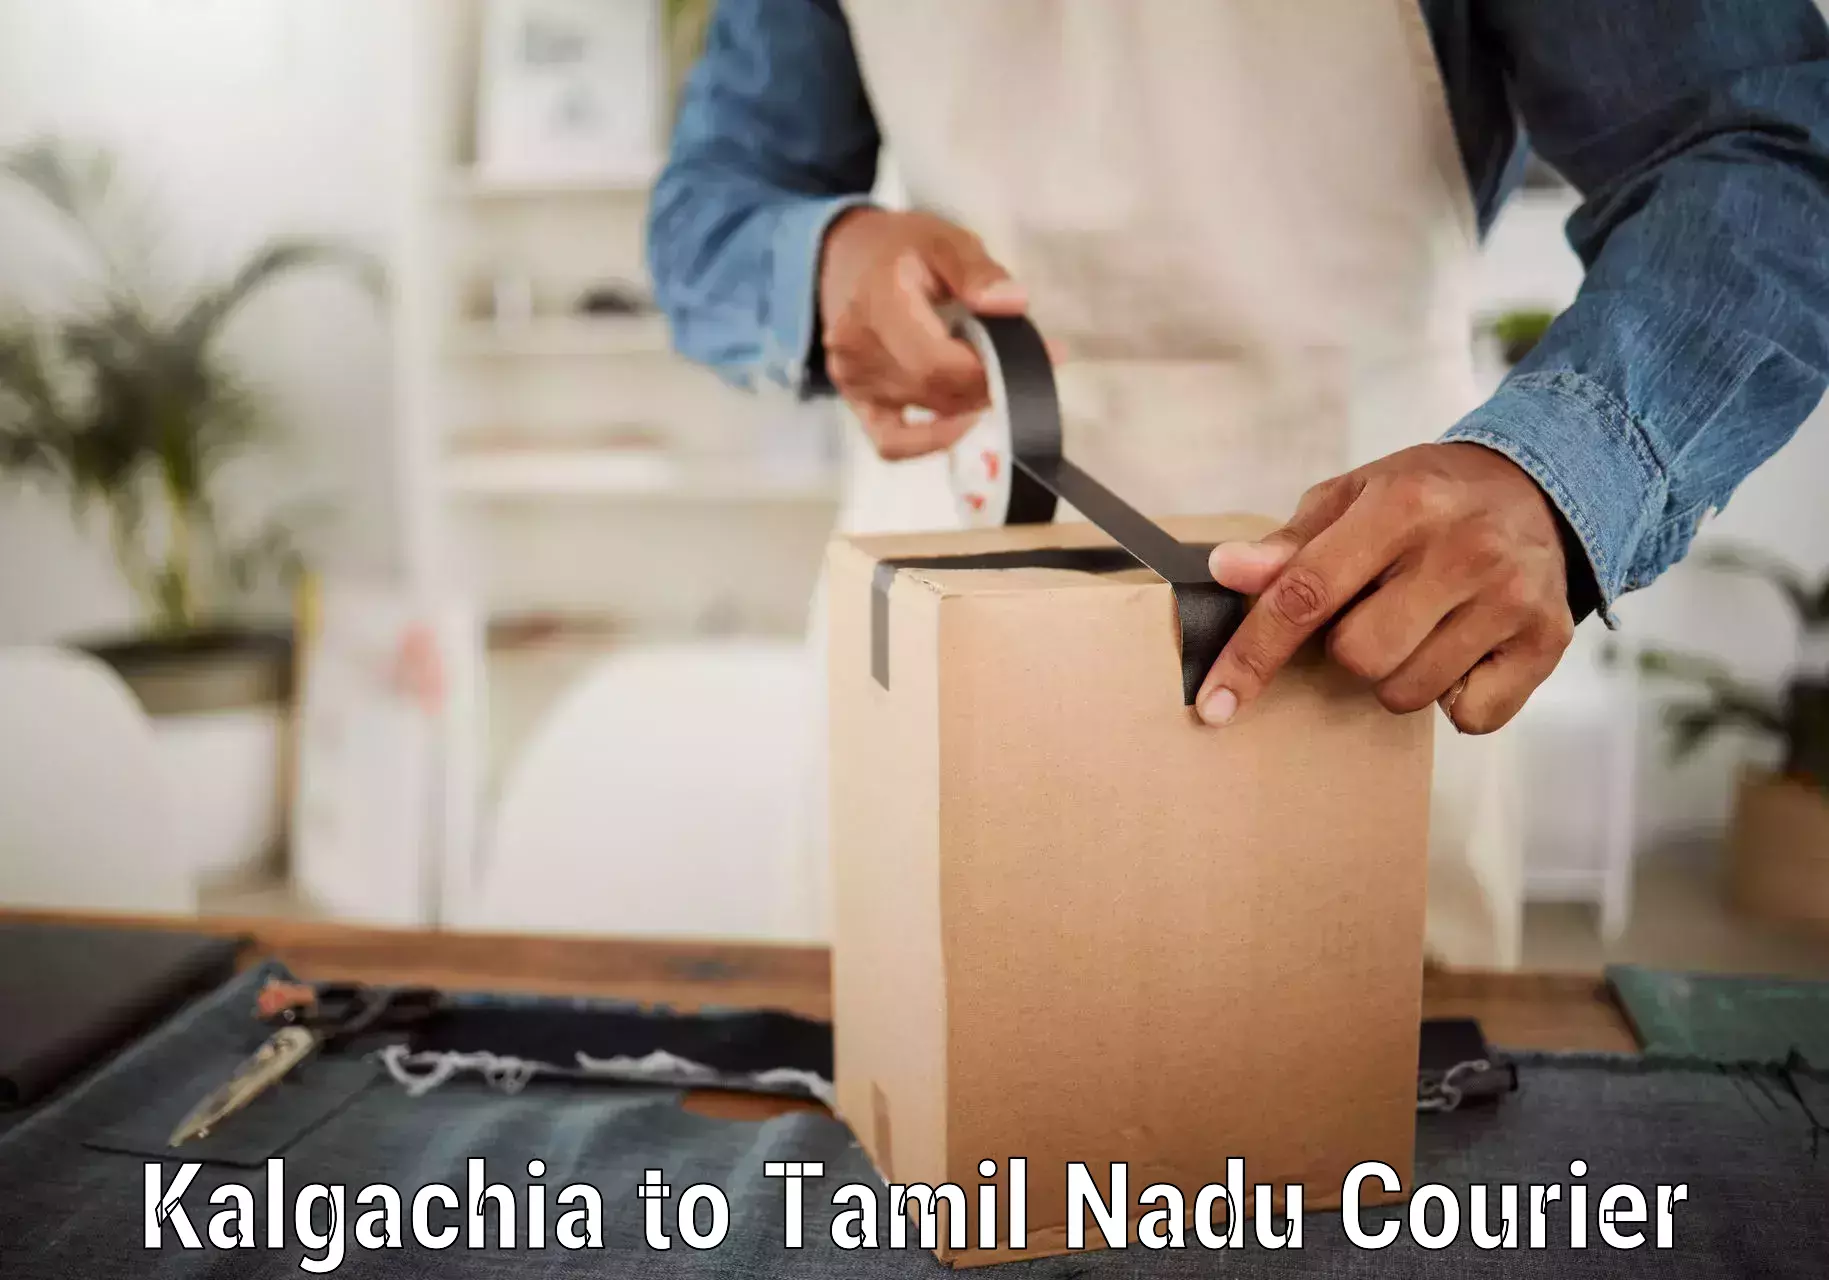 Reliable parcel services Kalgachia to Thiruvadanai